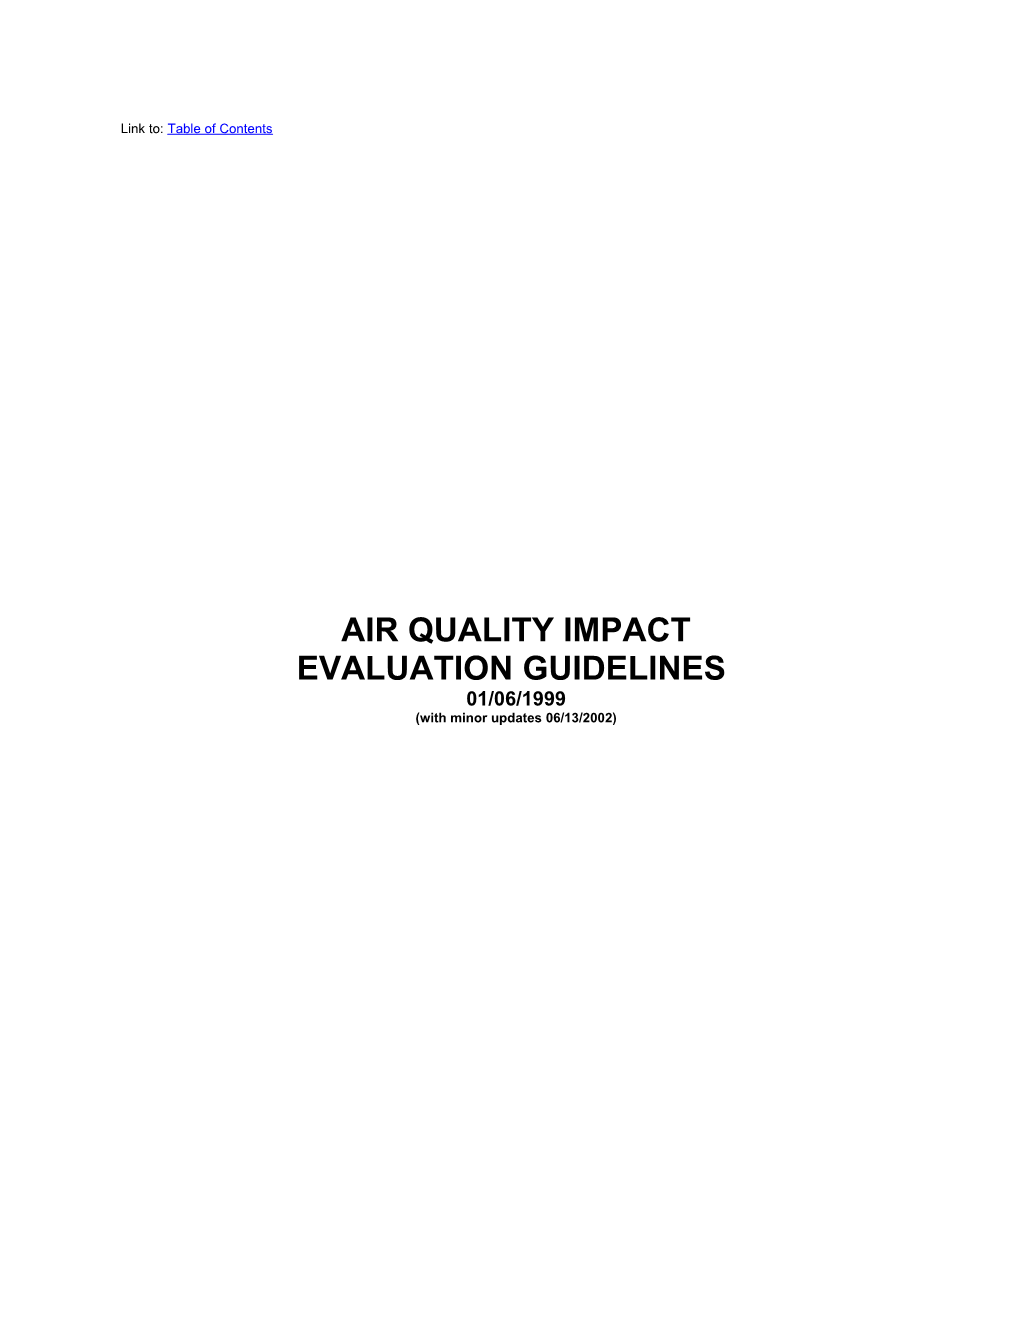 Air Quality Impact